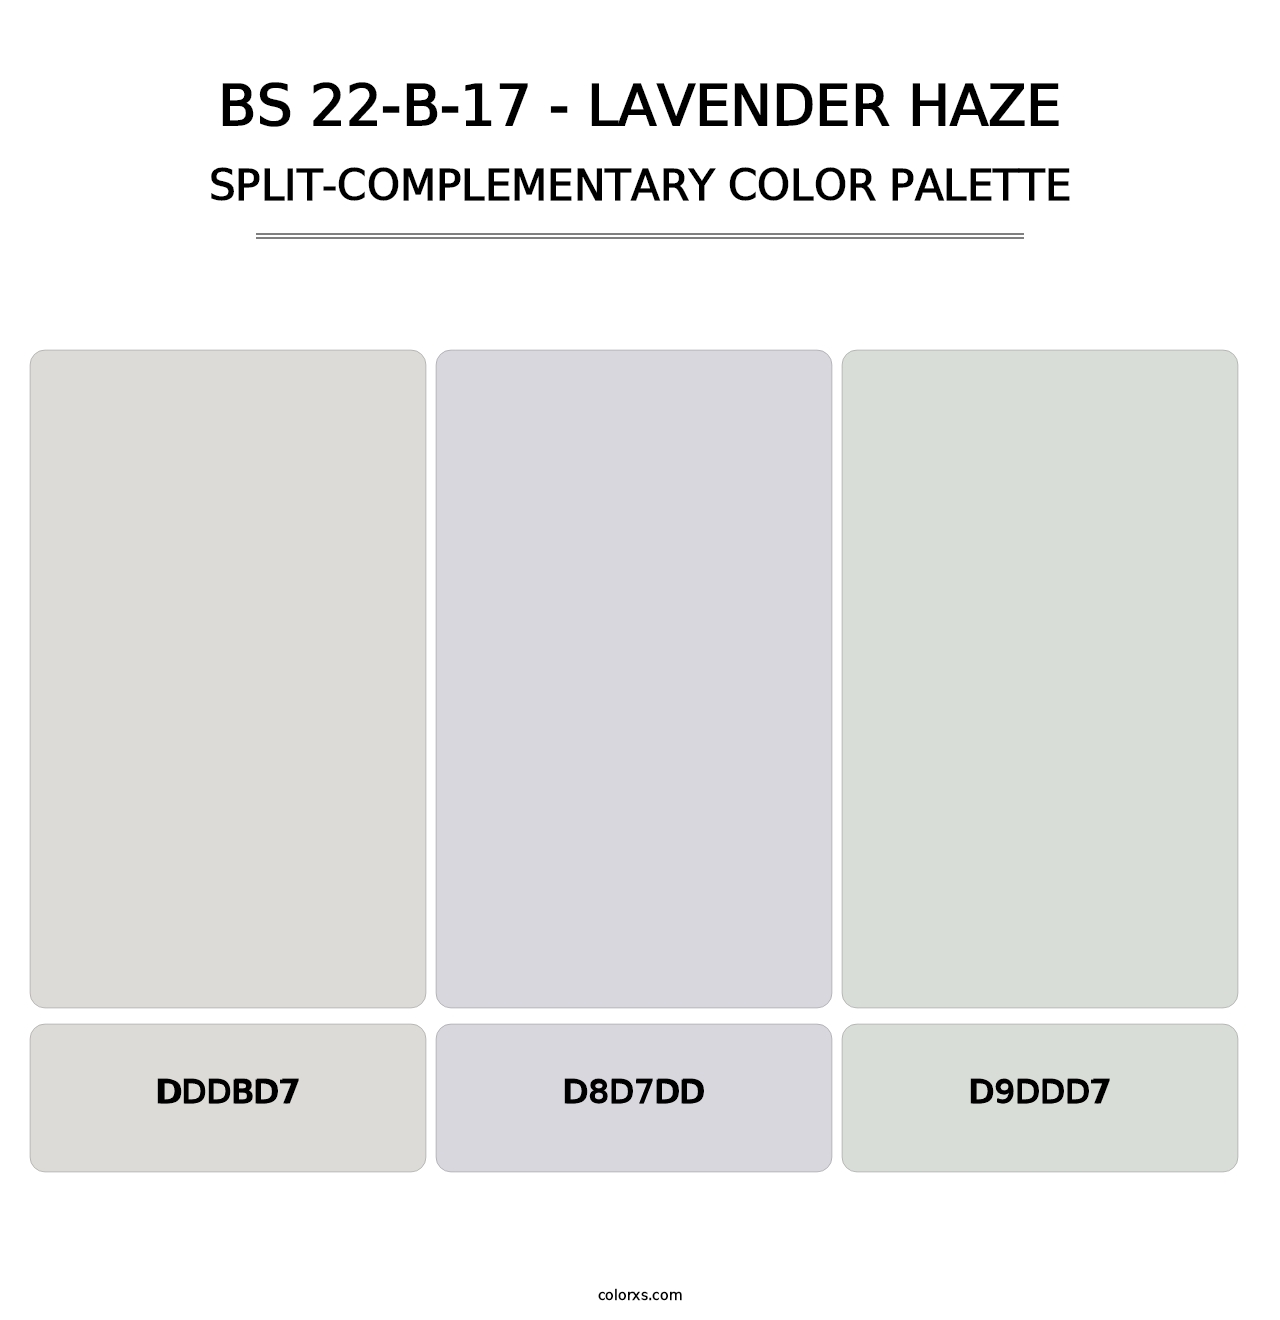 BS 22-B-17 - Lavender Haze - Split-Complementary Color Palette